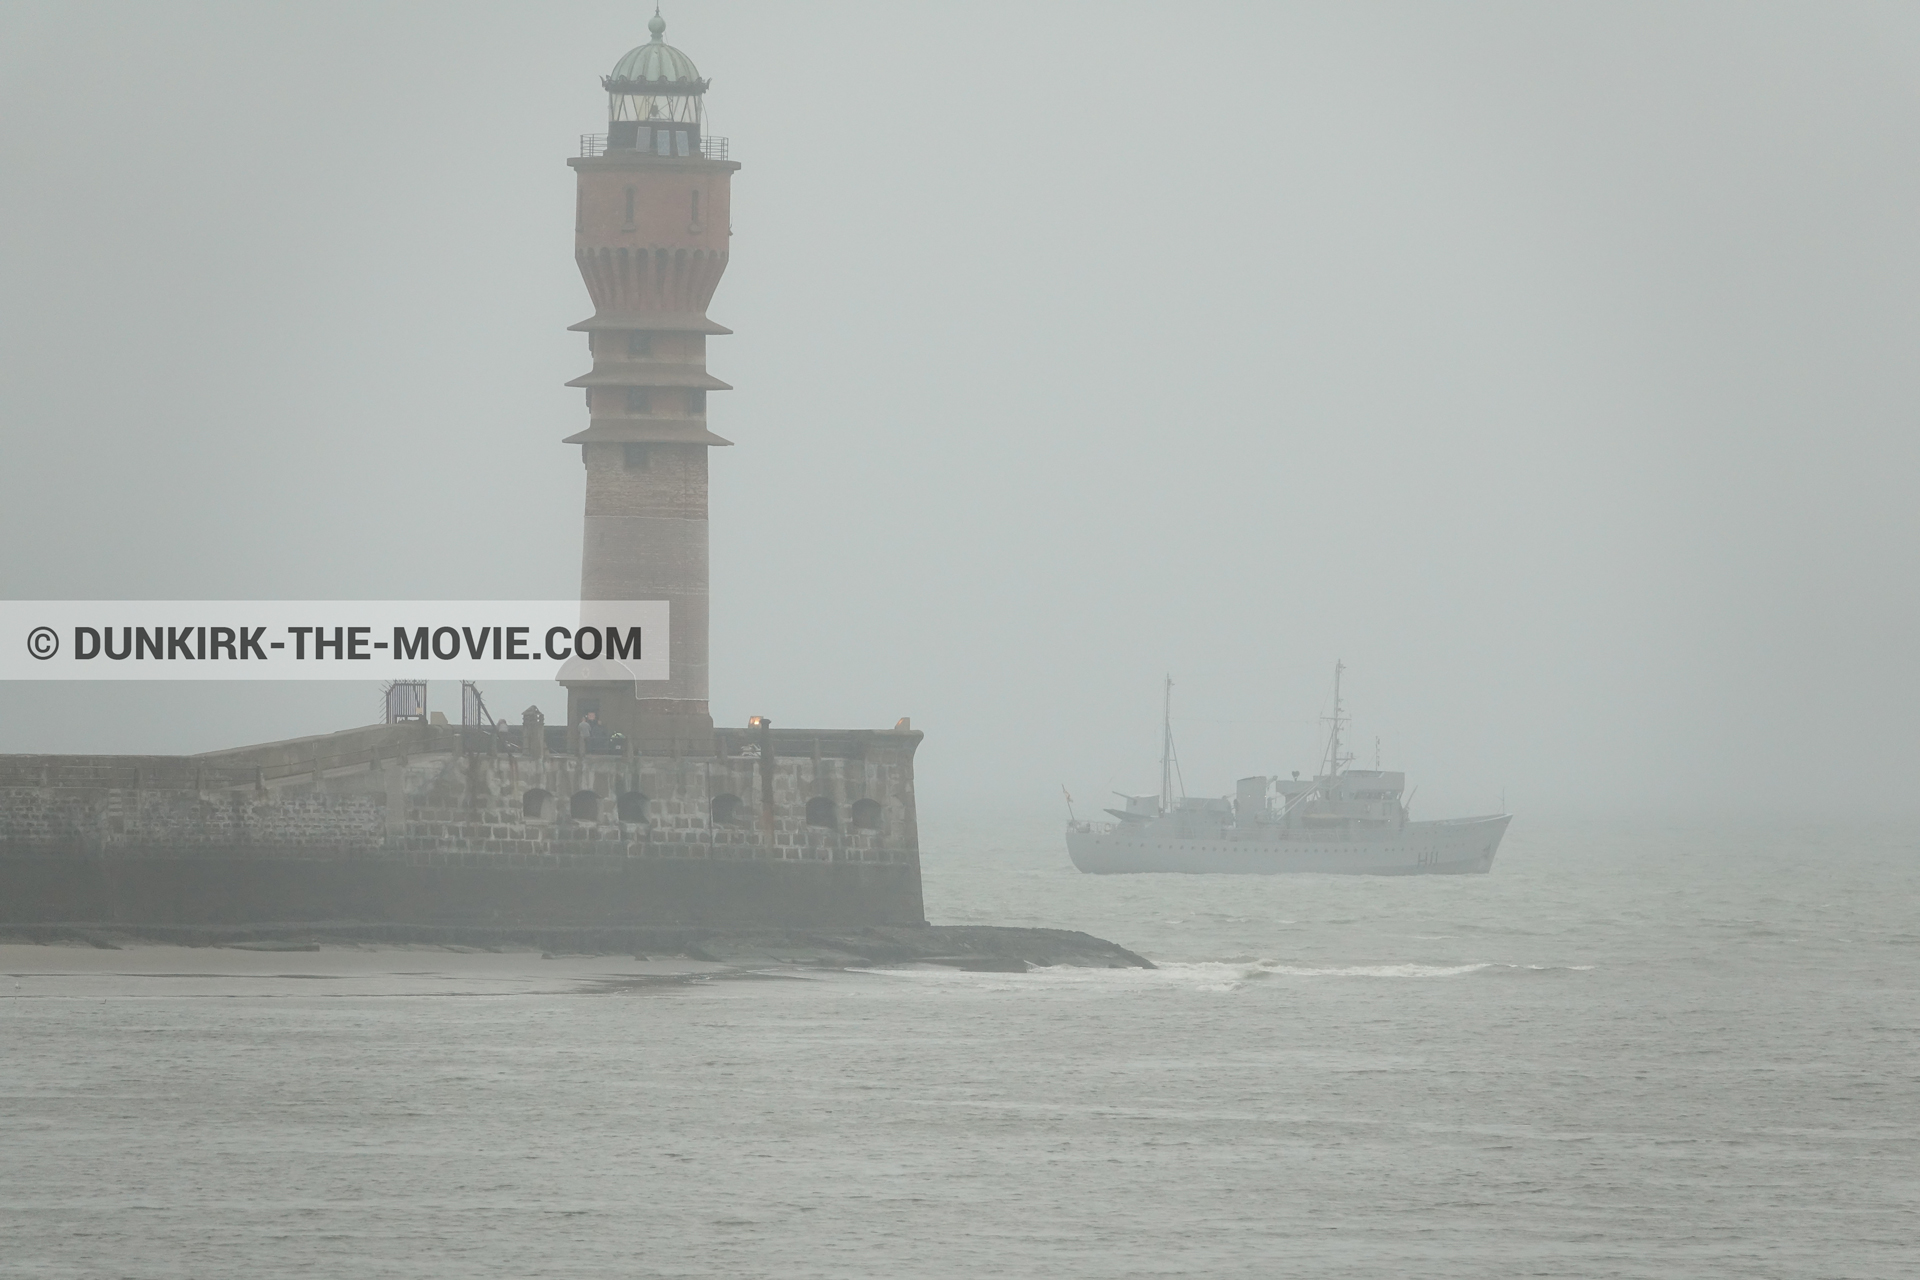 Photo avec bateau, ciel gris, mer calme, phare de St Pol sur Mer,  des dessous du Film Dunkerque de Nolan